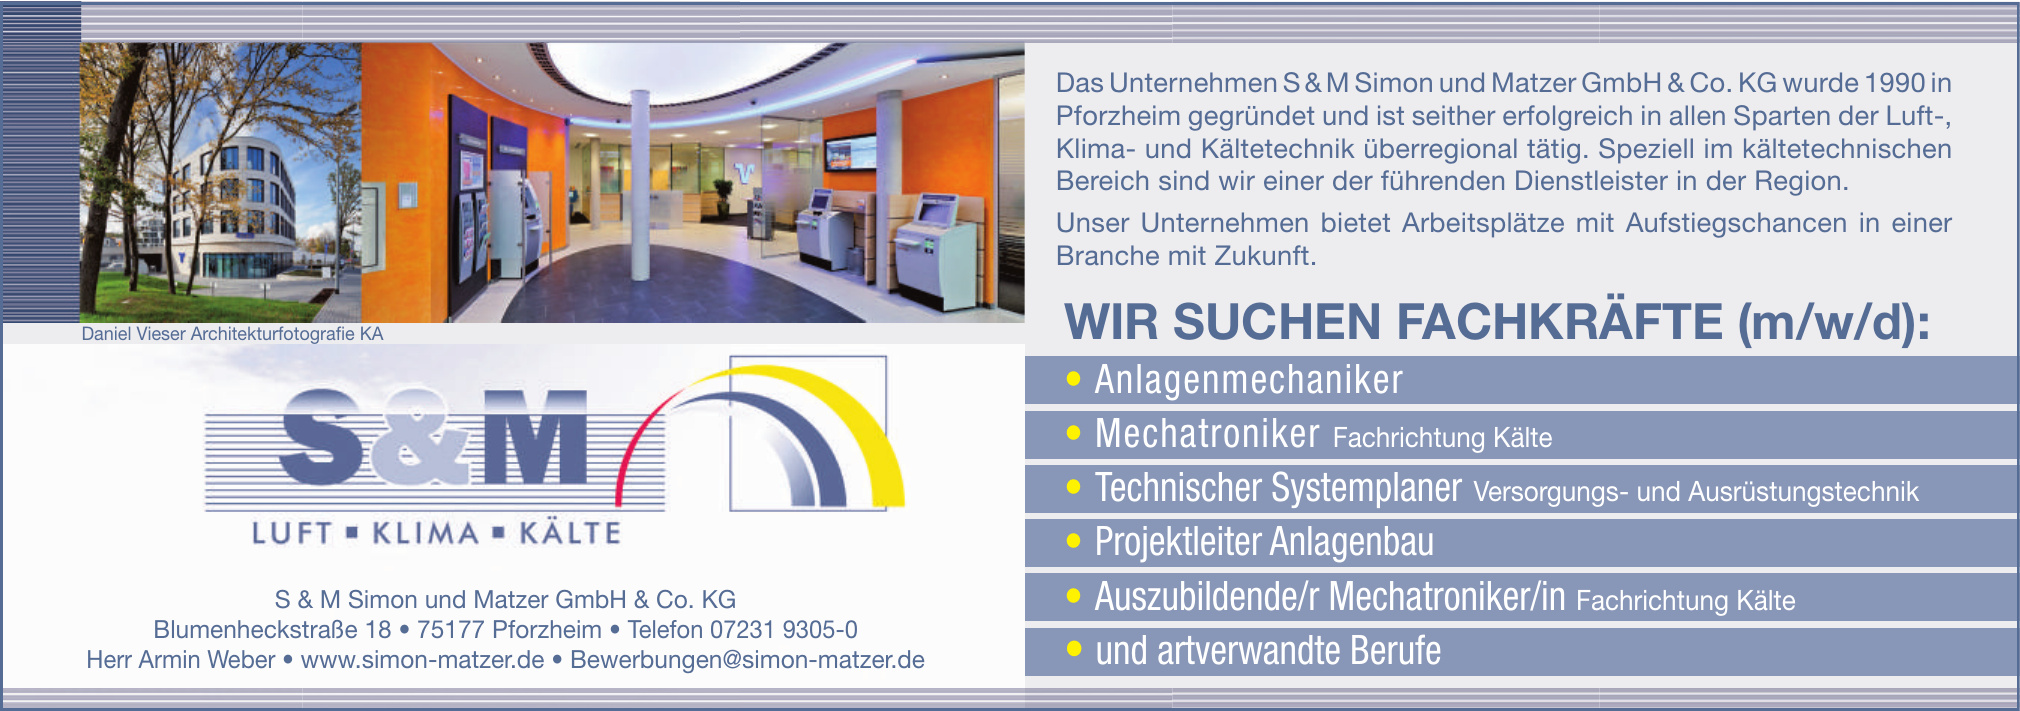 S & M Simon und Matzer GmbH & Co. KG